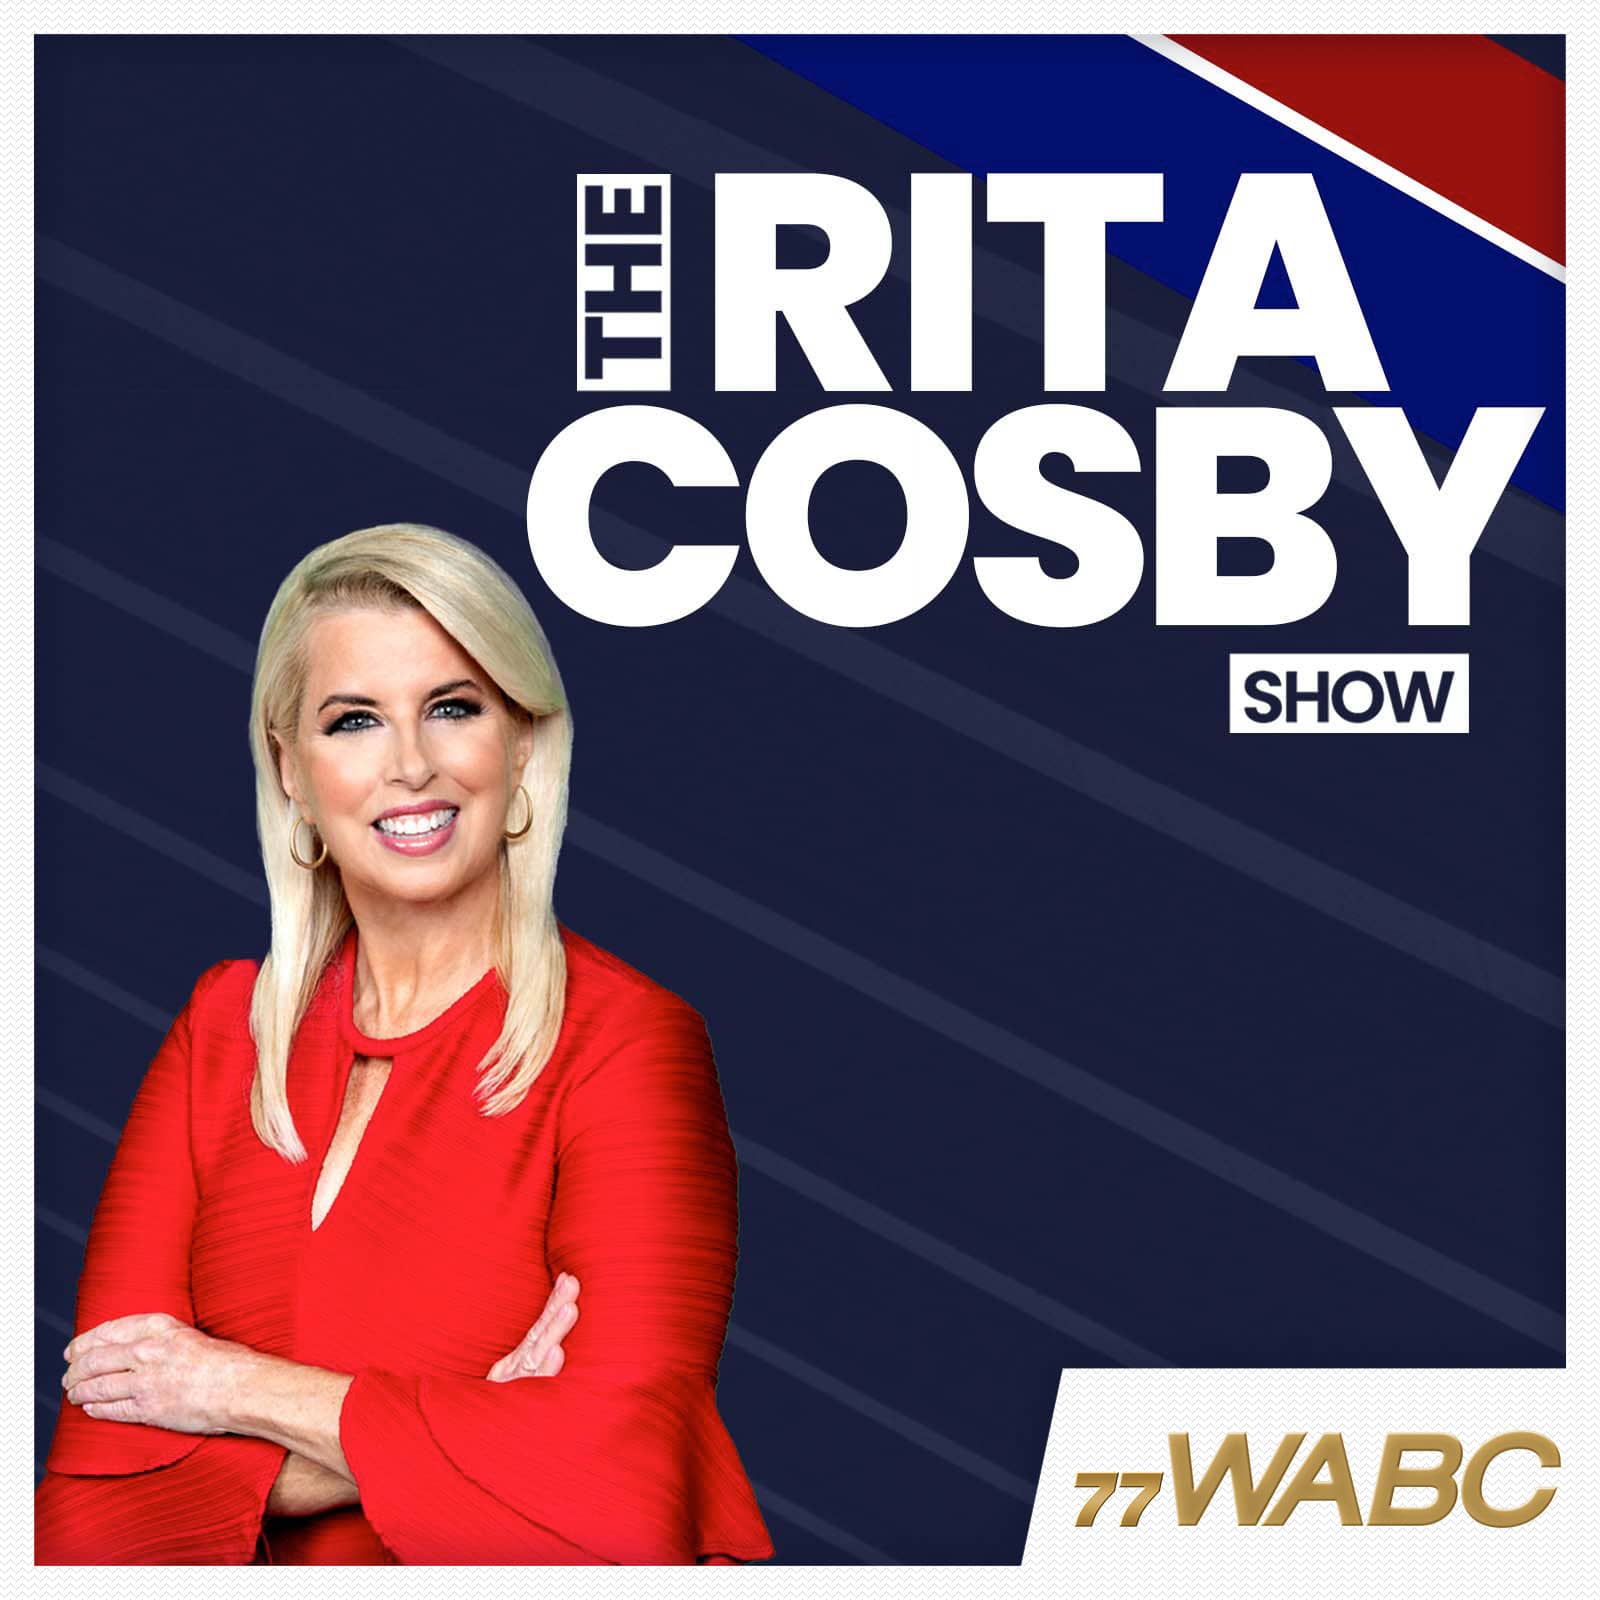 rita-cosby-podcast-new-logo29181